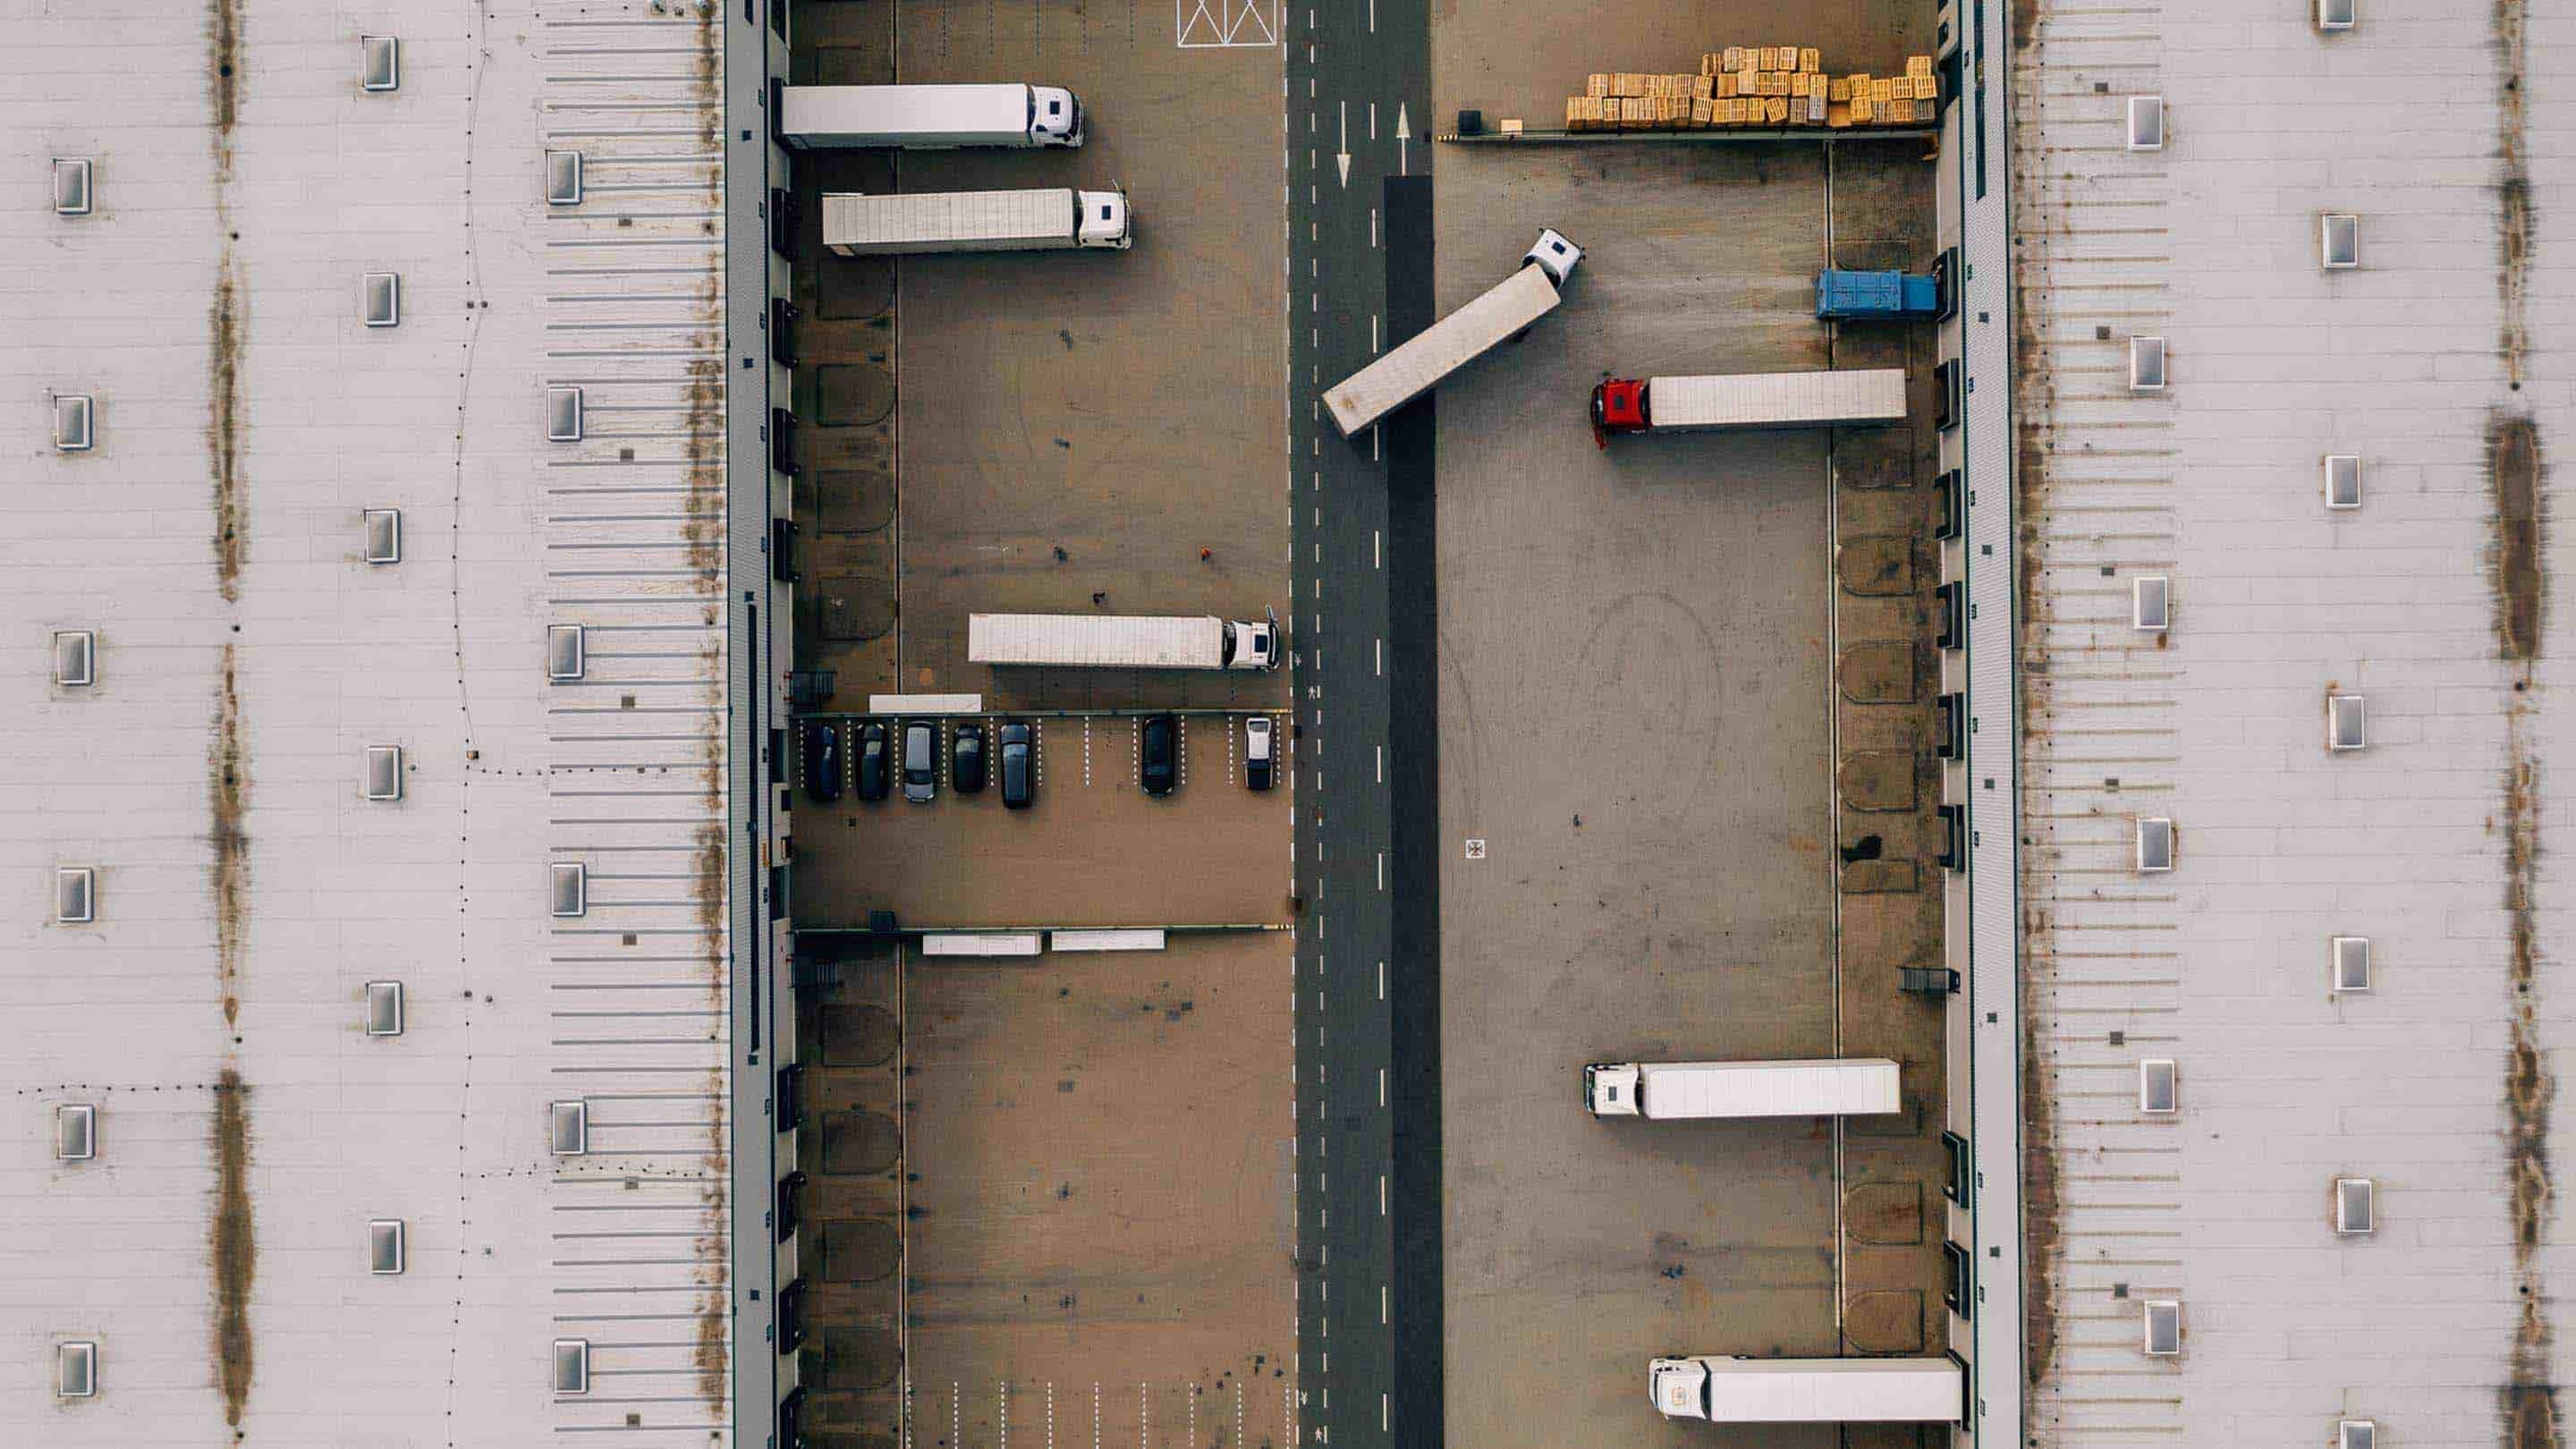 Imagen de camiones tomada desde arriba